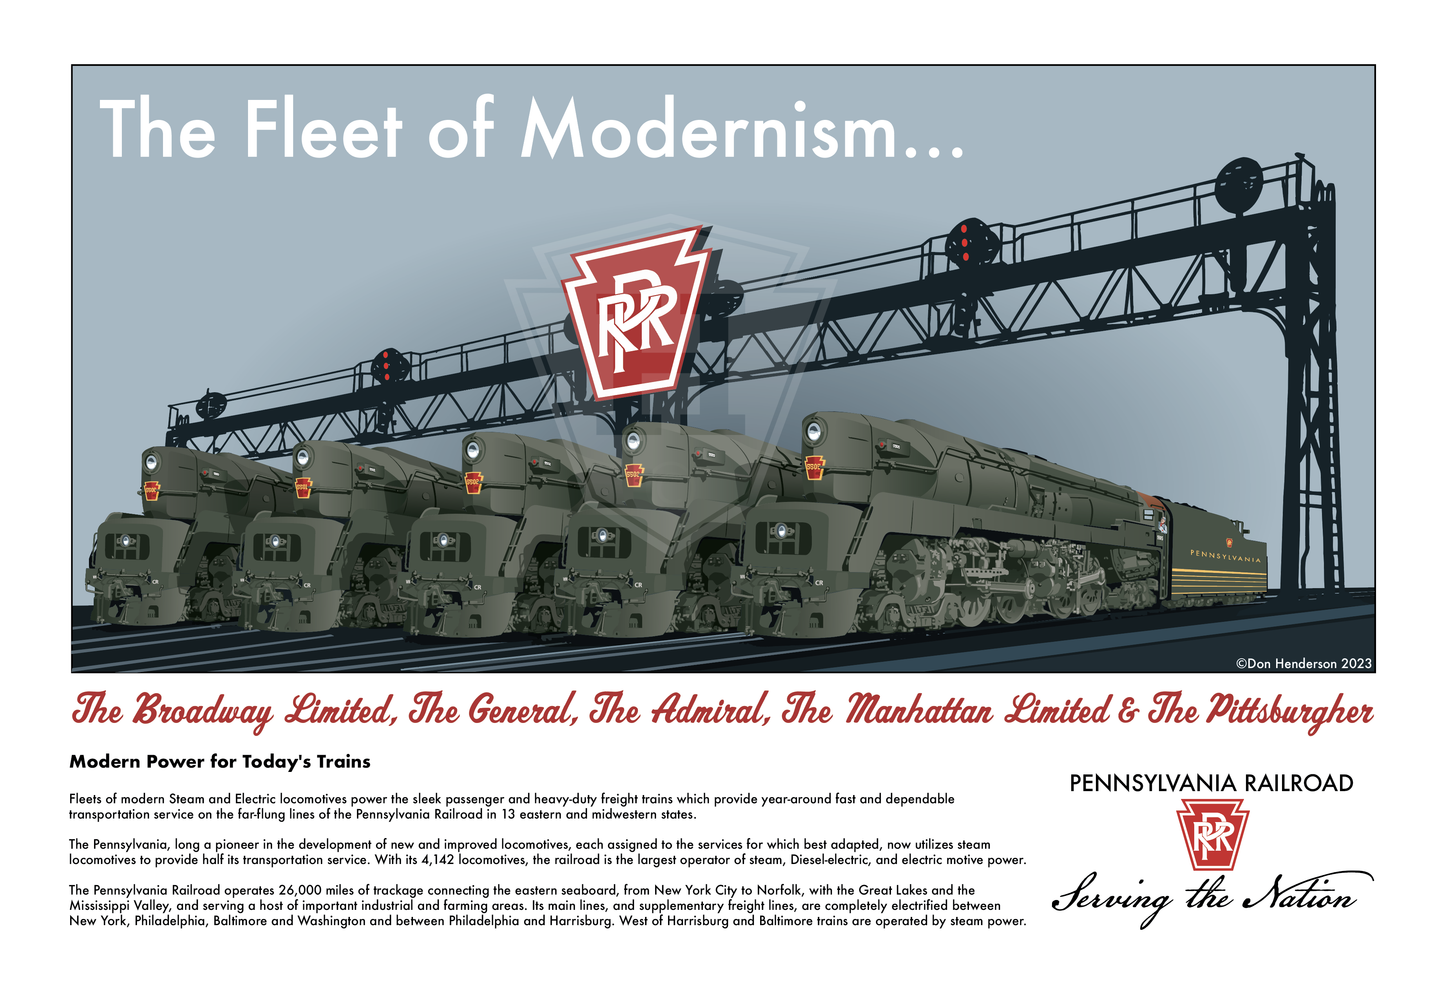 Fleet of Modernism - 18x12" Print